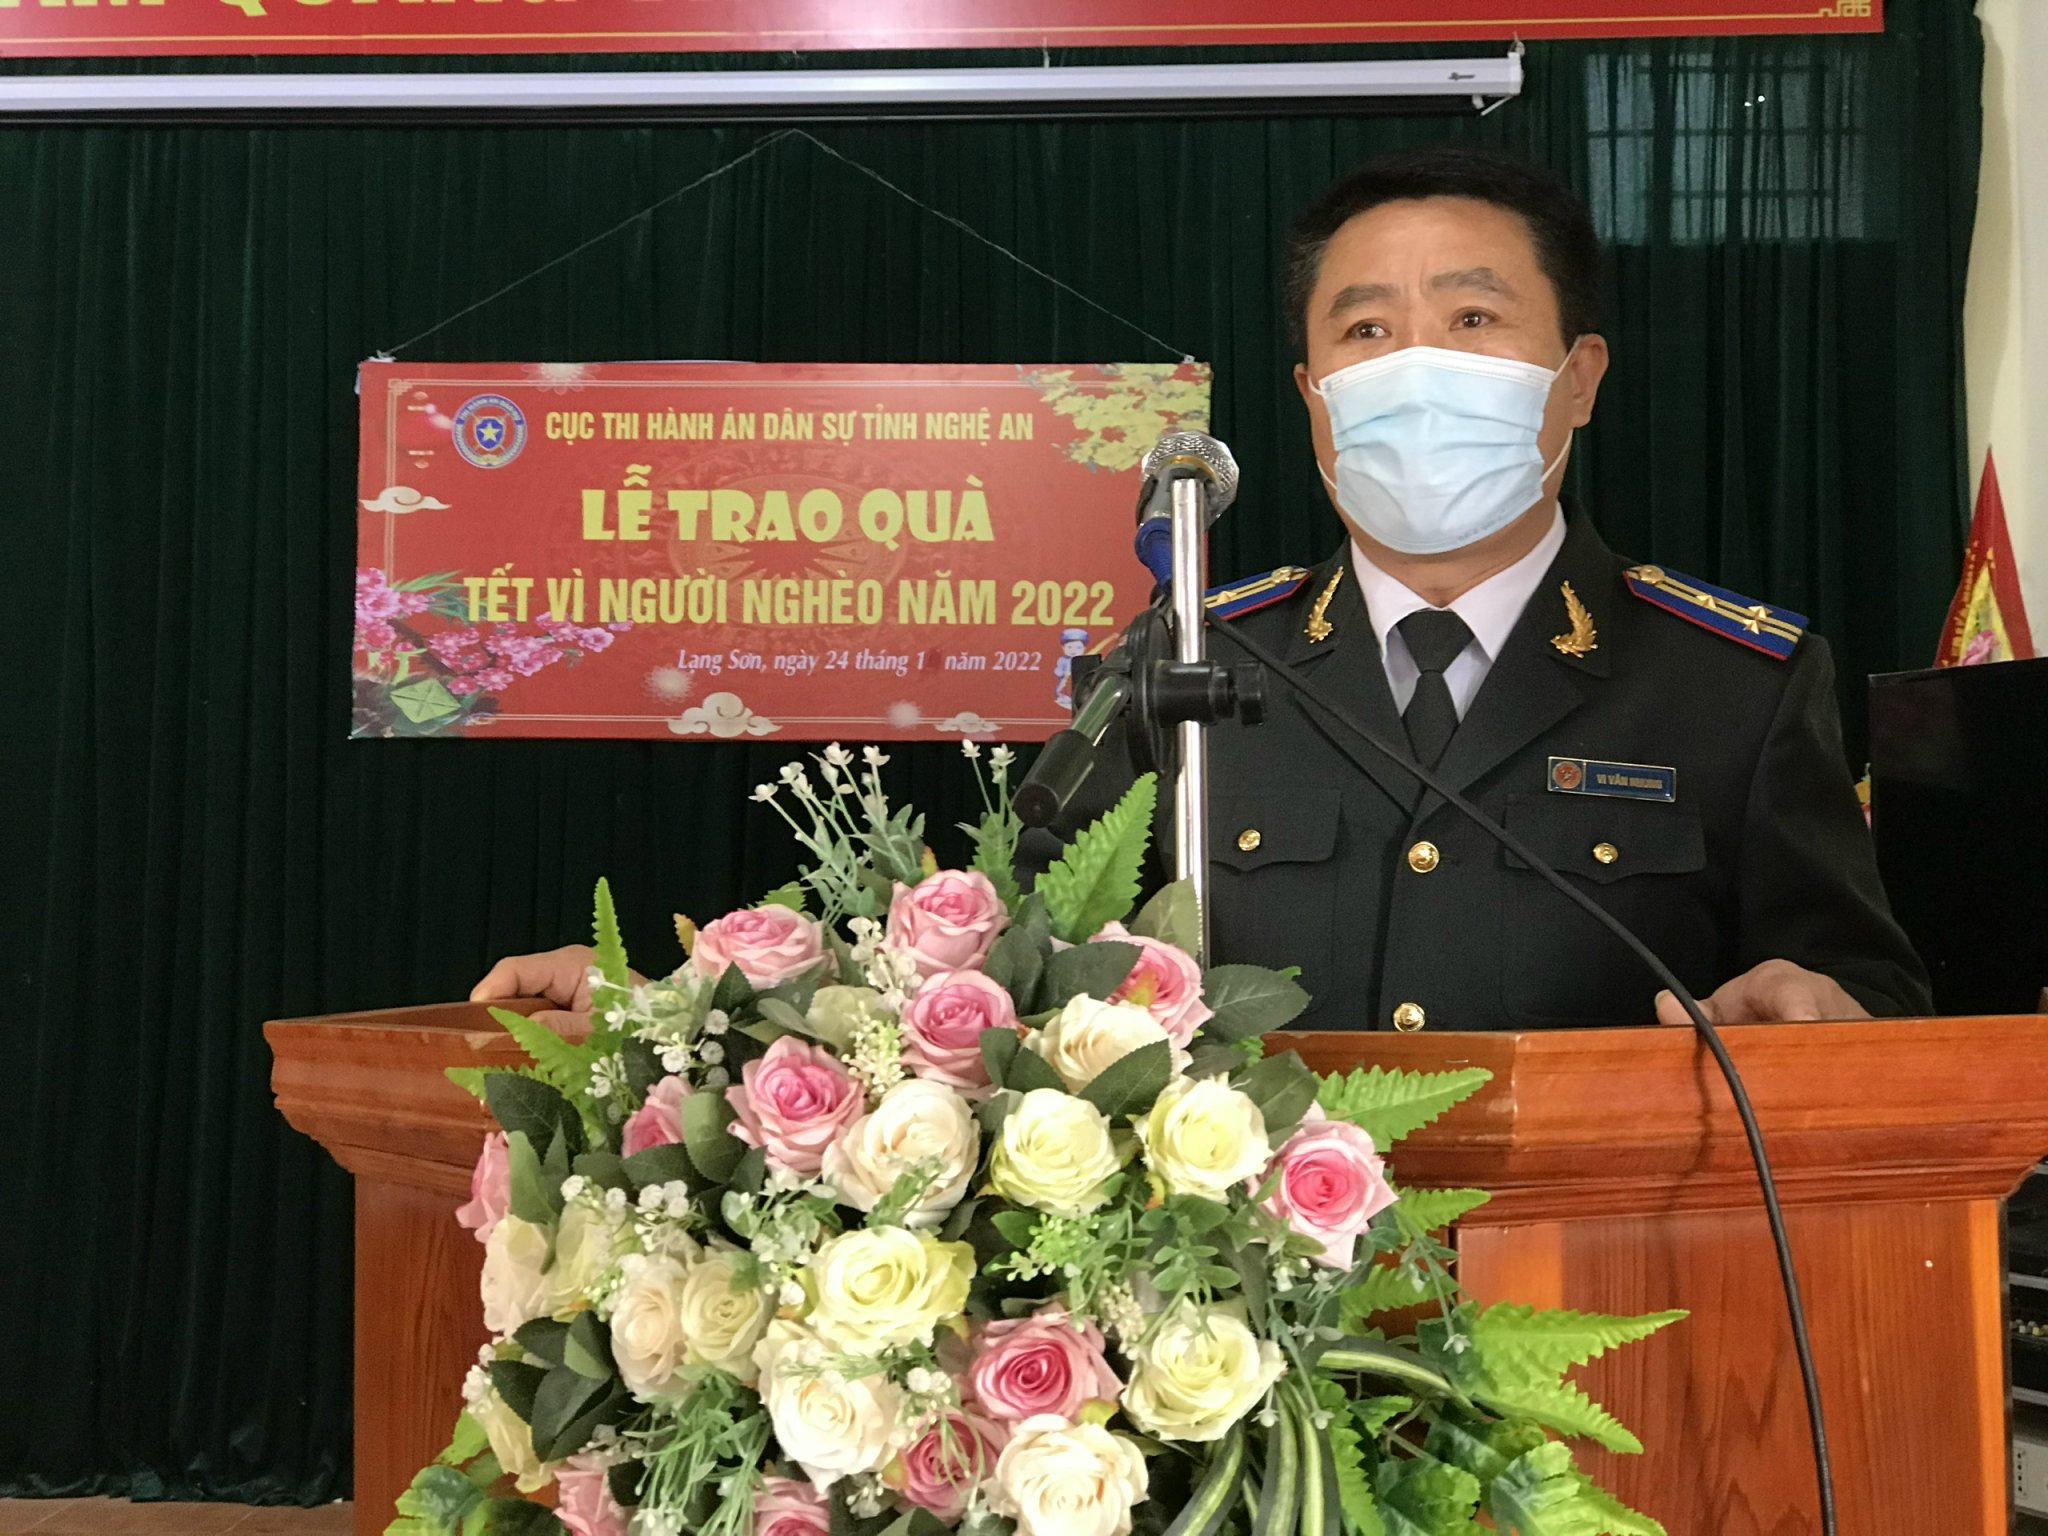 Cục Thi hành án dân sự tỉnh Nghệ An tổ chức các hoạt động “ Tết vì người nghèo” năm 2022